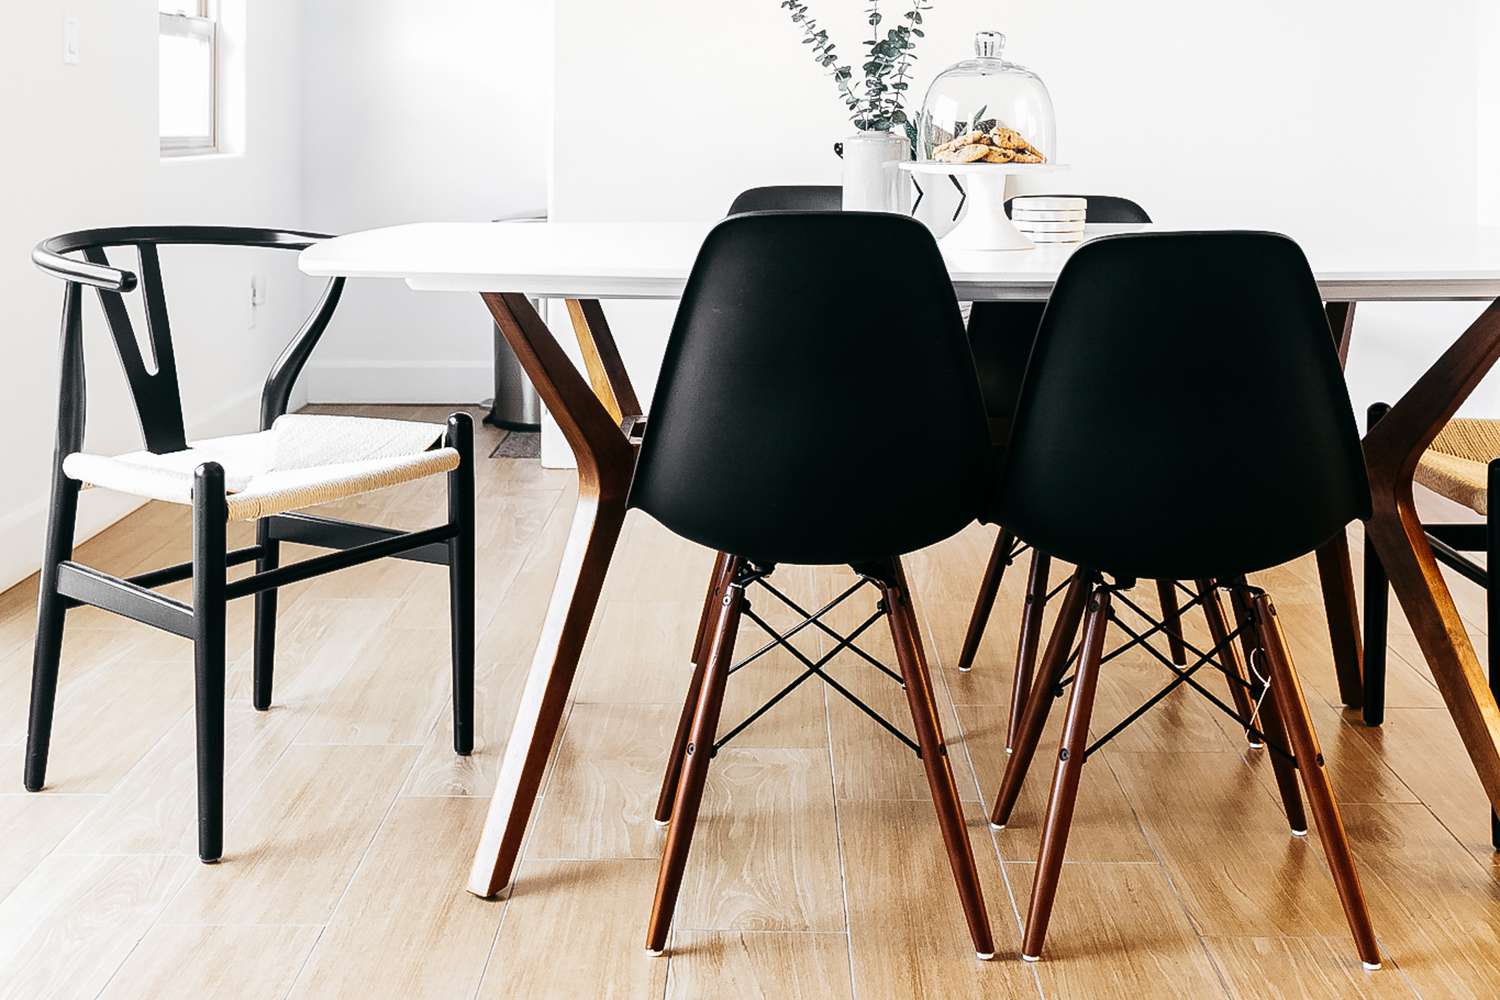 Schwarze Eames-Stühle um weißen Esstisch